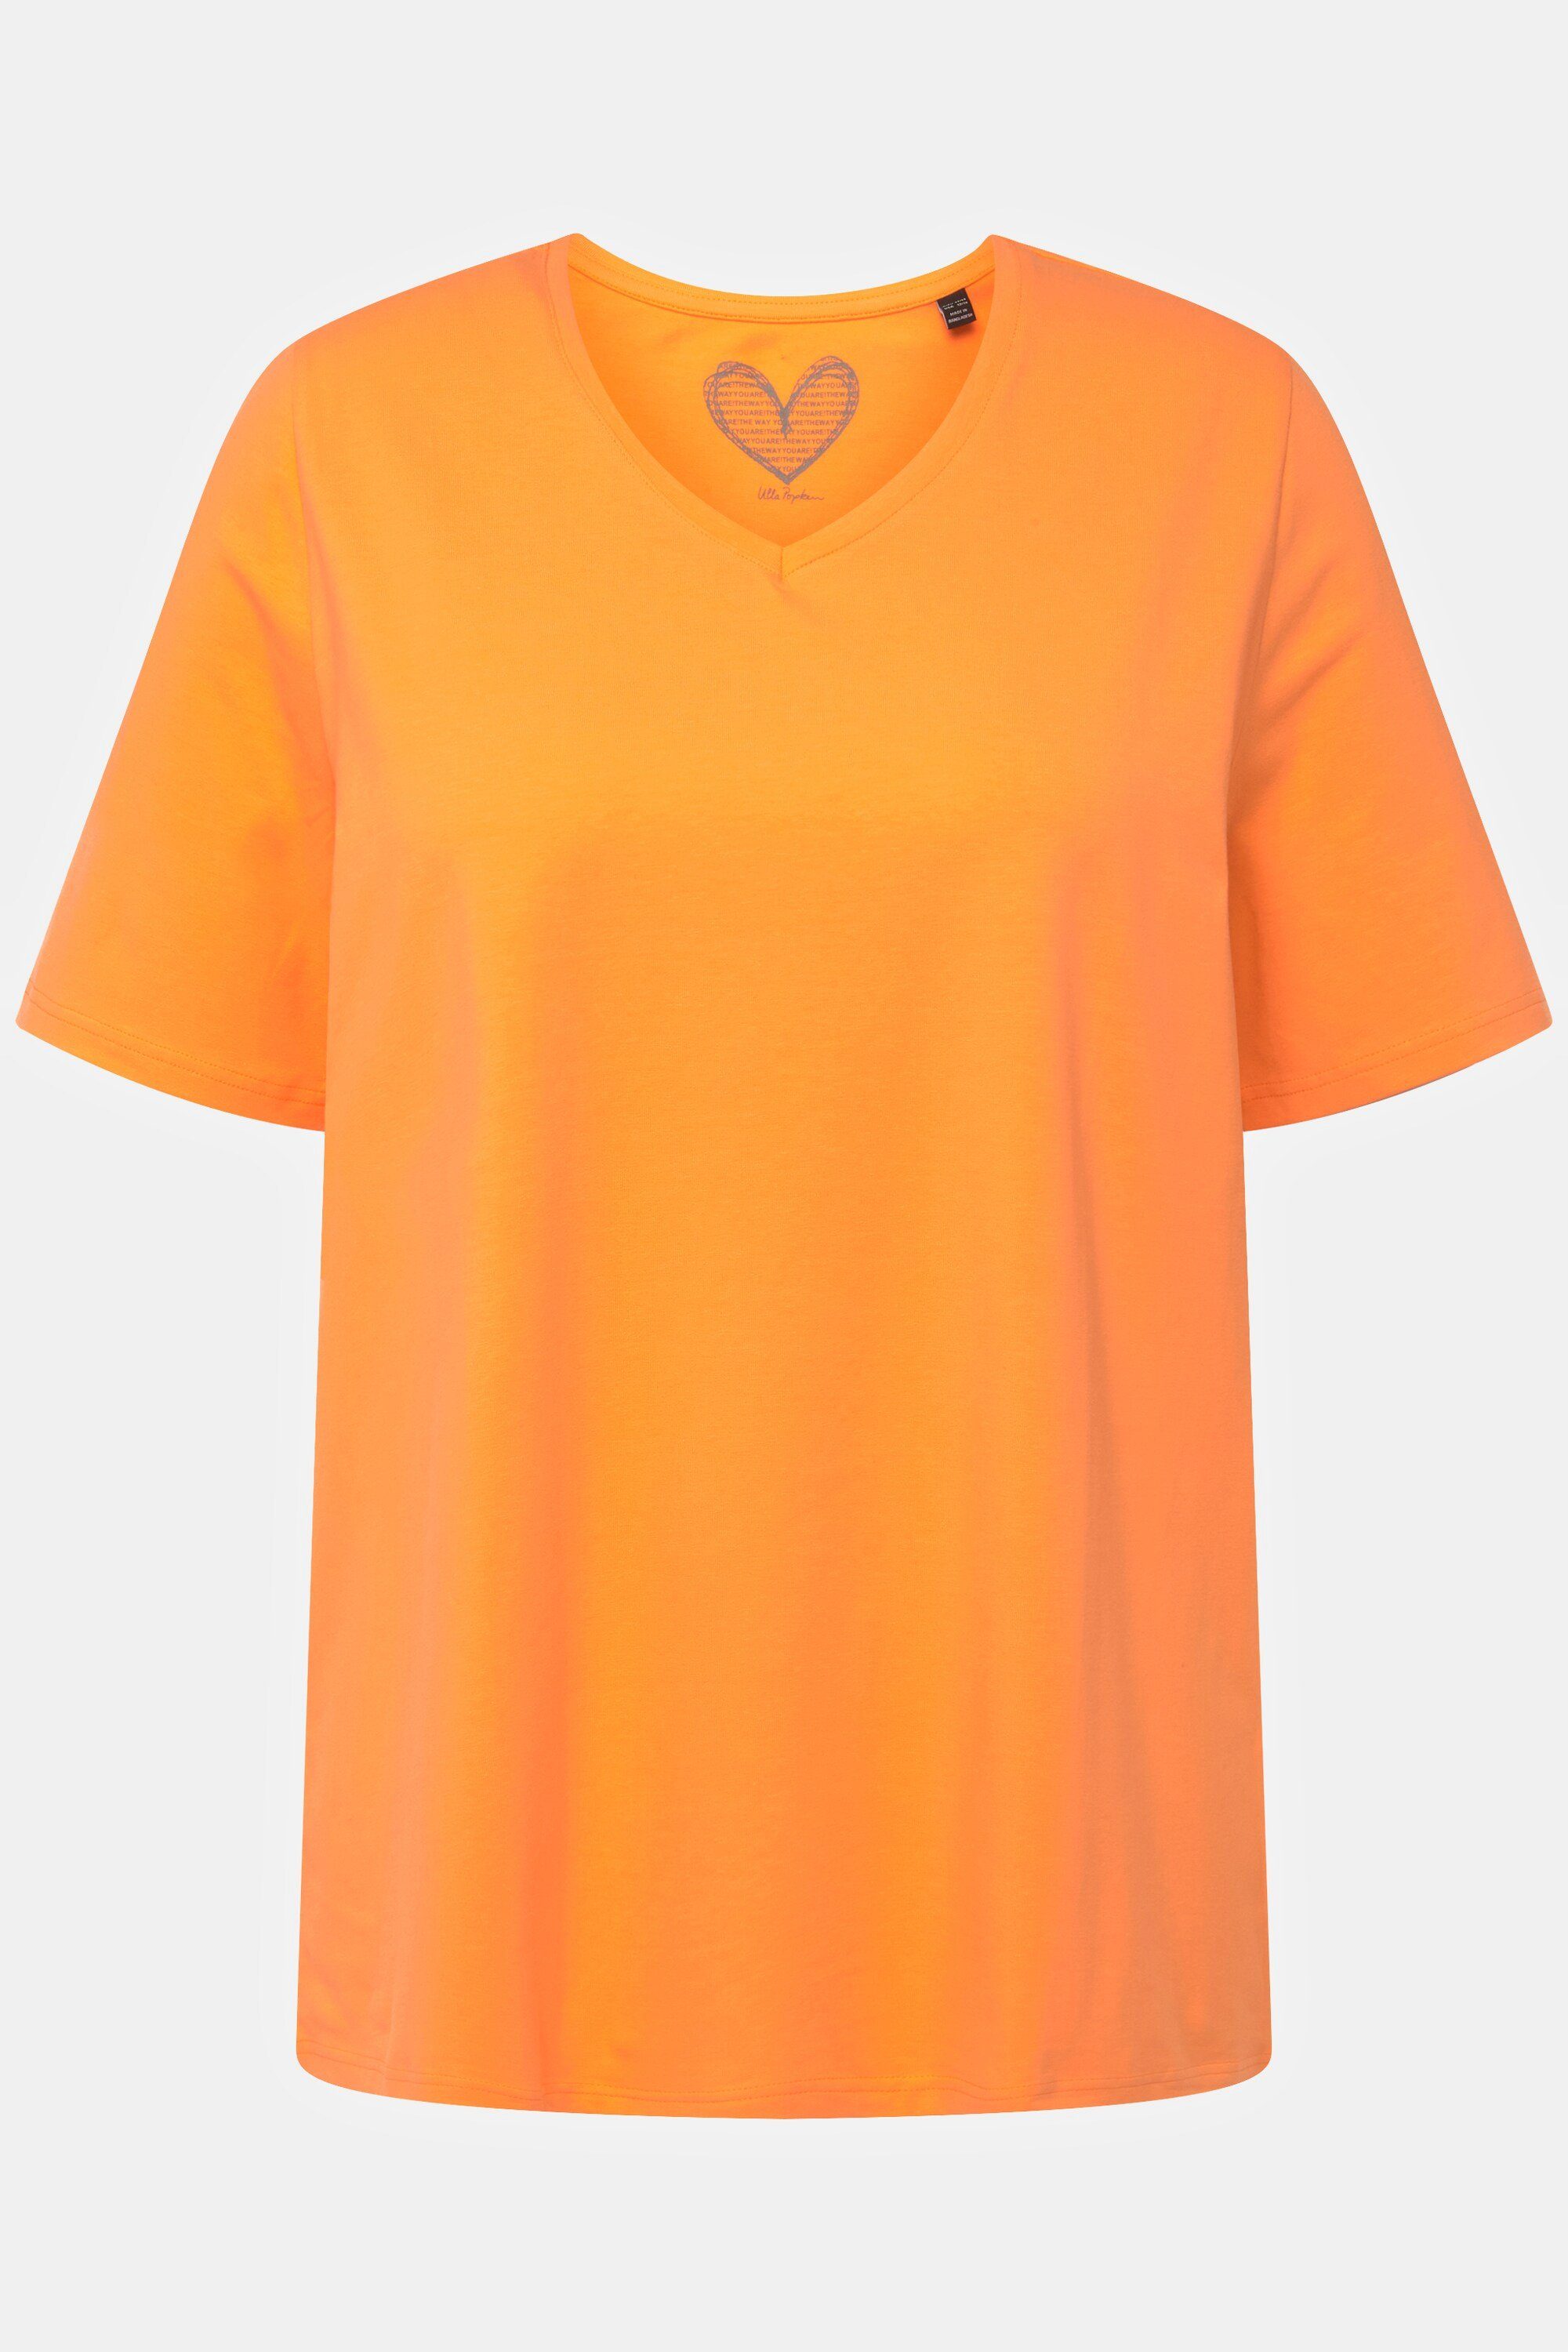 Popken A-Linie T-Shirt Rundhalsshirt Ulla orange cantaloupe V-Ausschnitt Halbarm